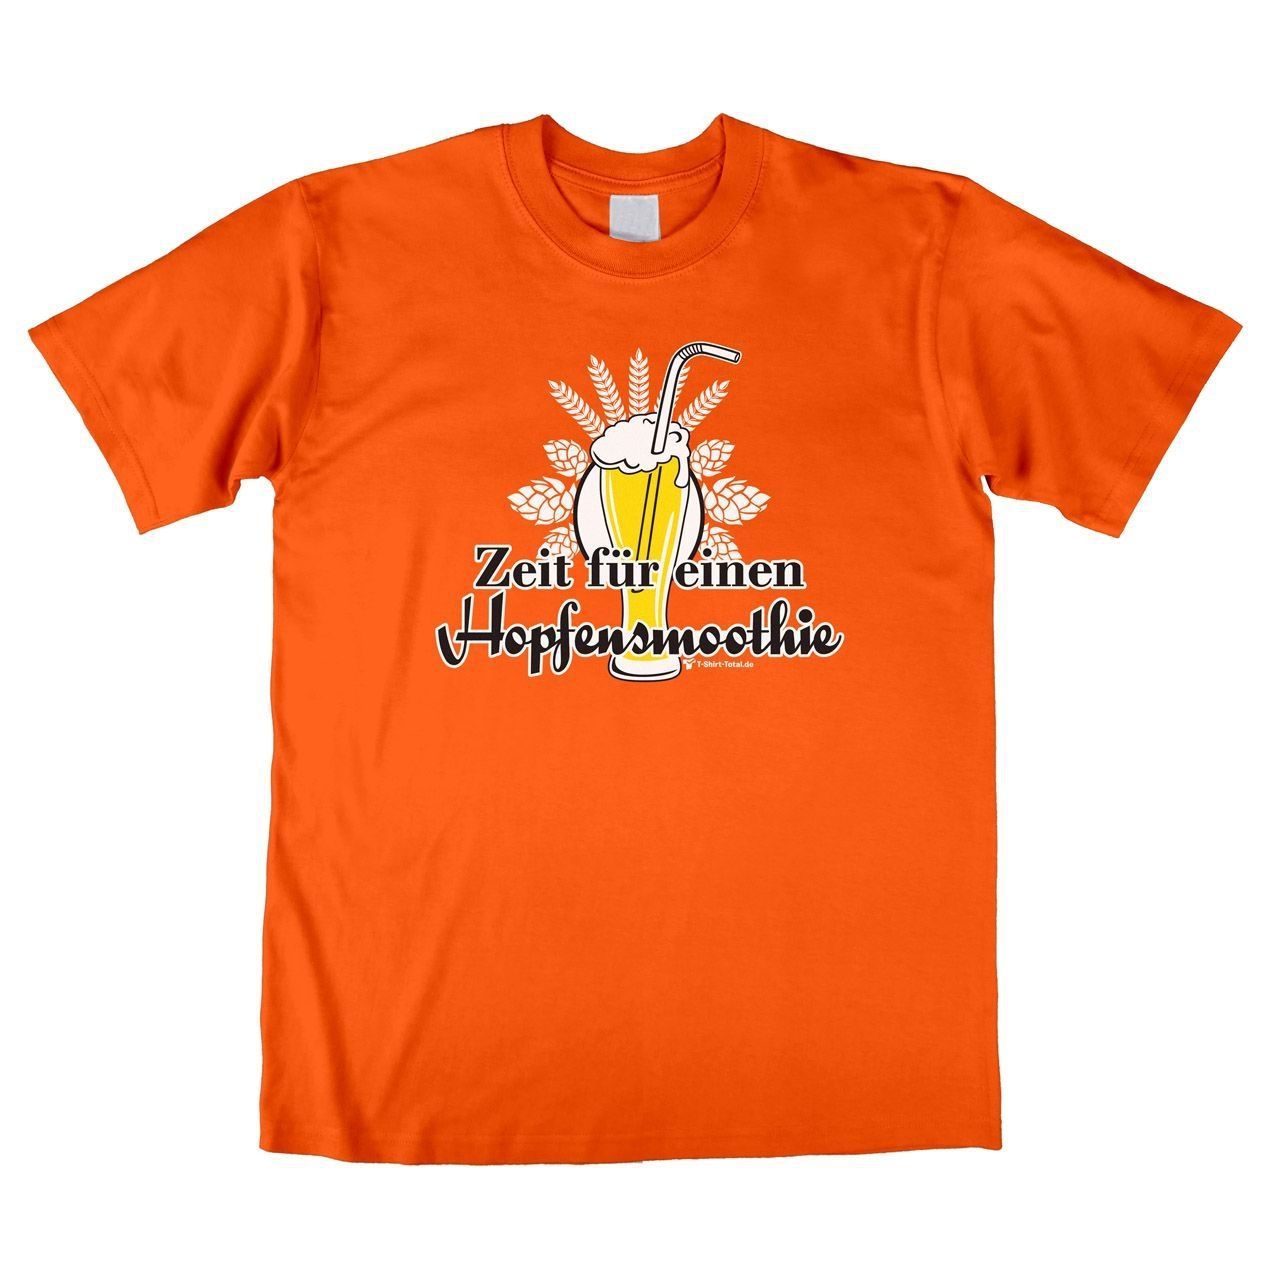 Hopfensmoothie Unisex T-Shirt orange Large